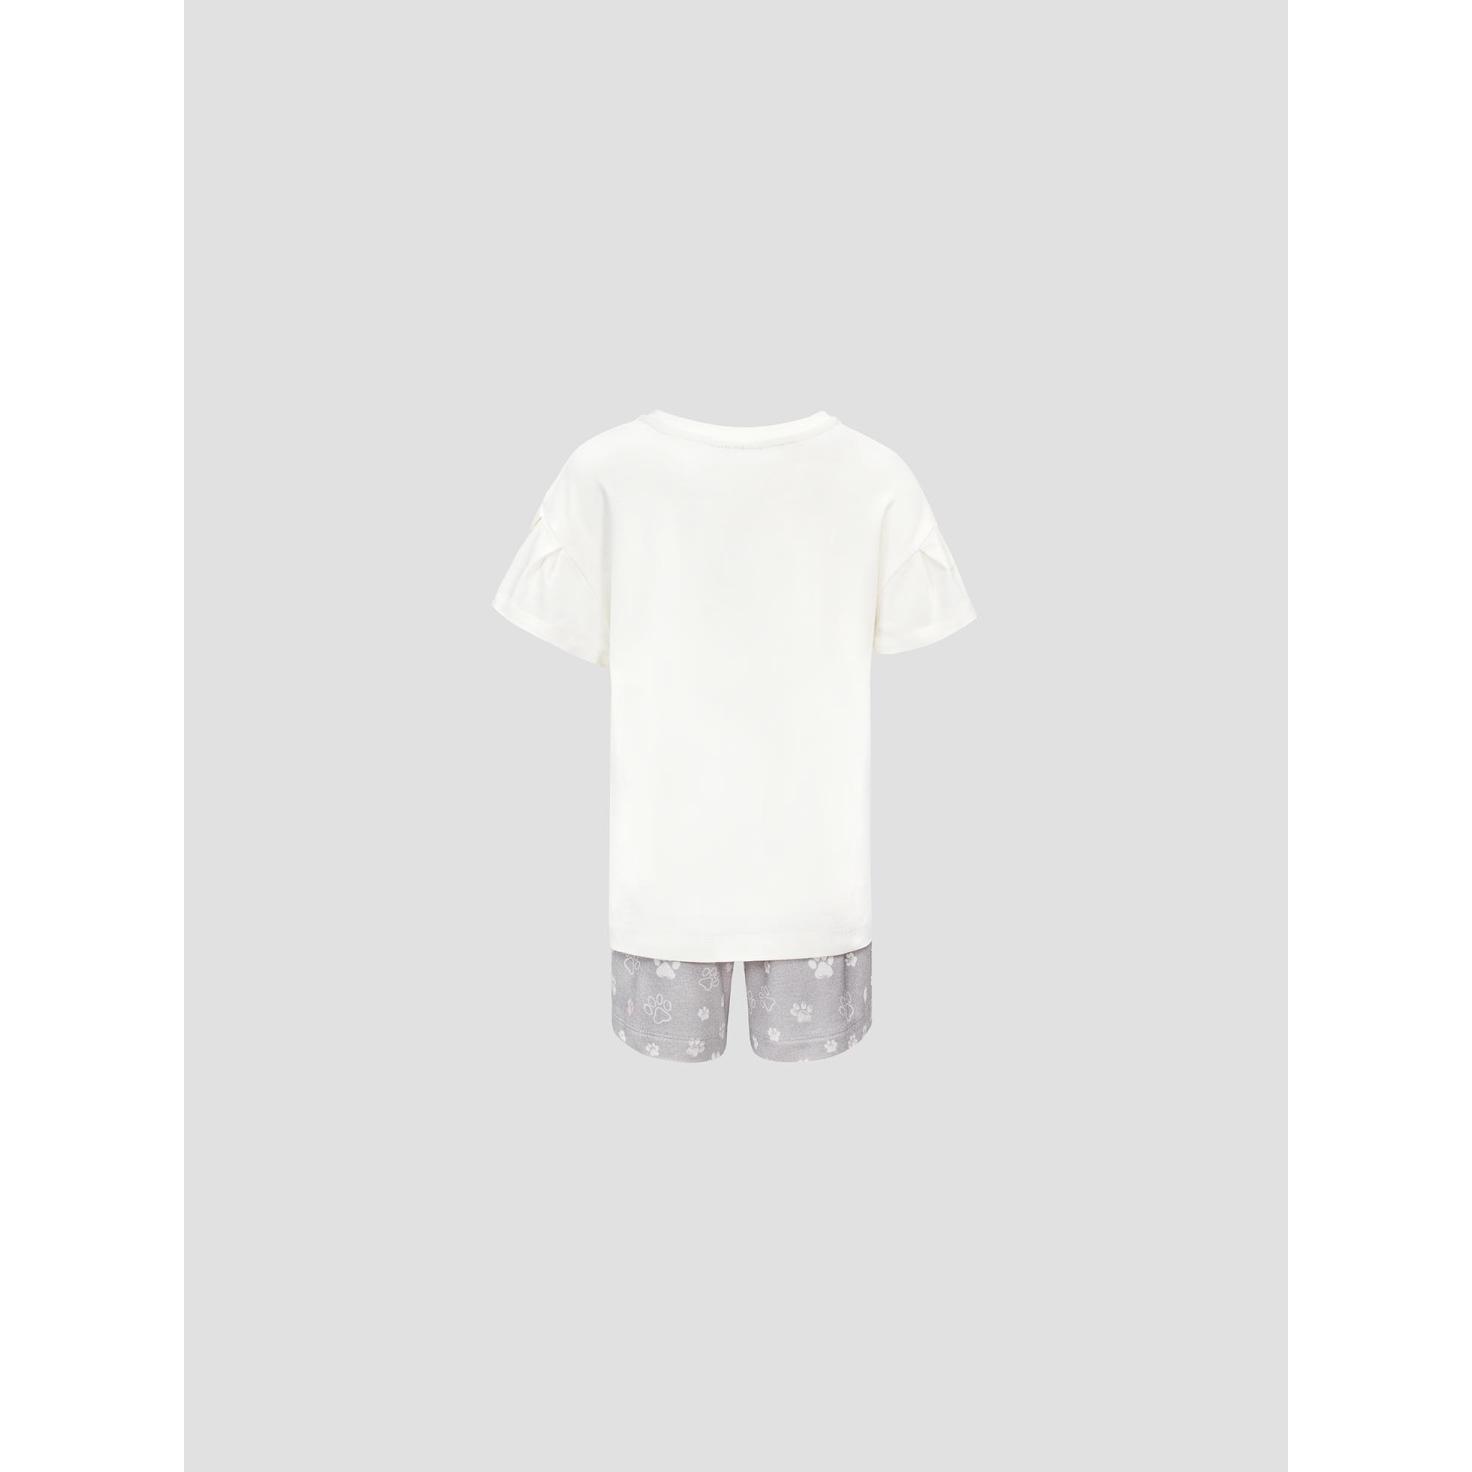 Пижама для девочек Kids by togas Китти бело-серая 128-134 см, цвет белый, размер 128-134 см - фото 2